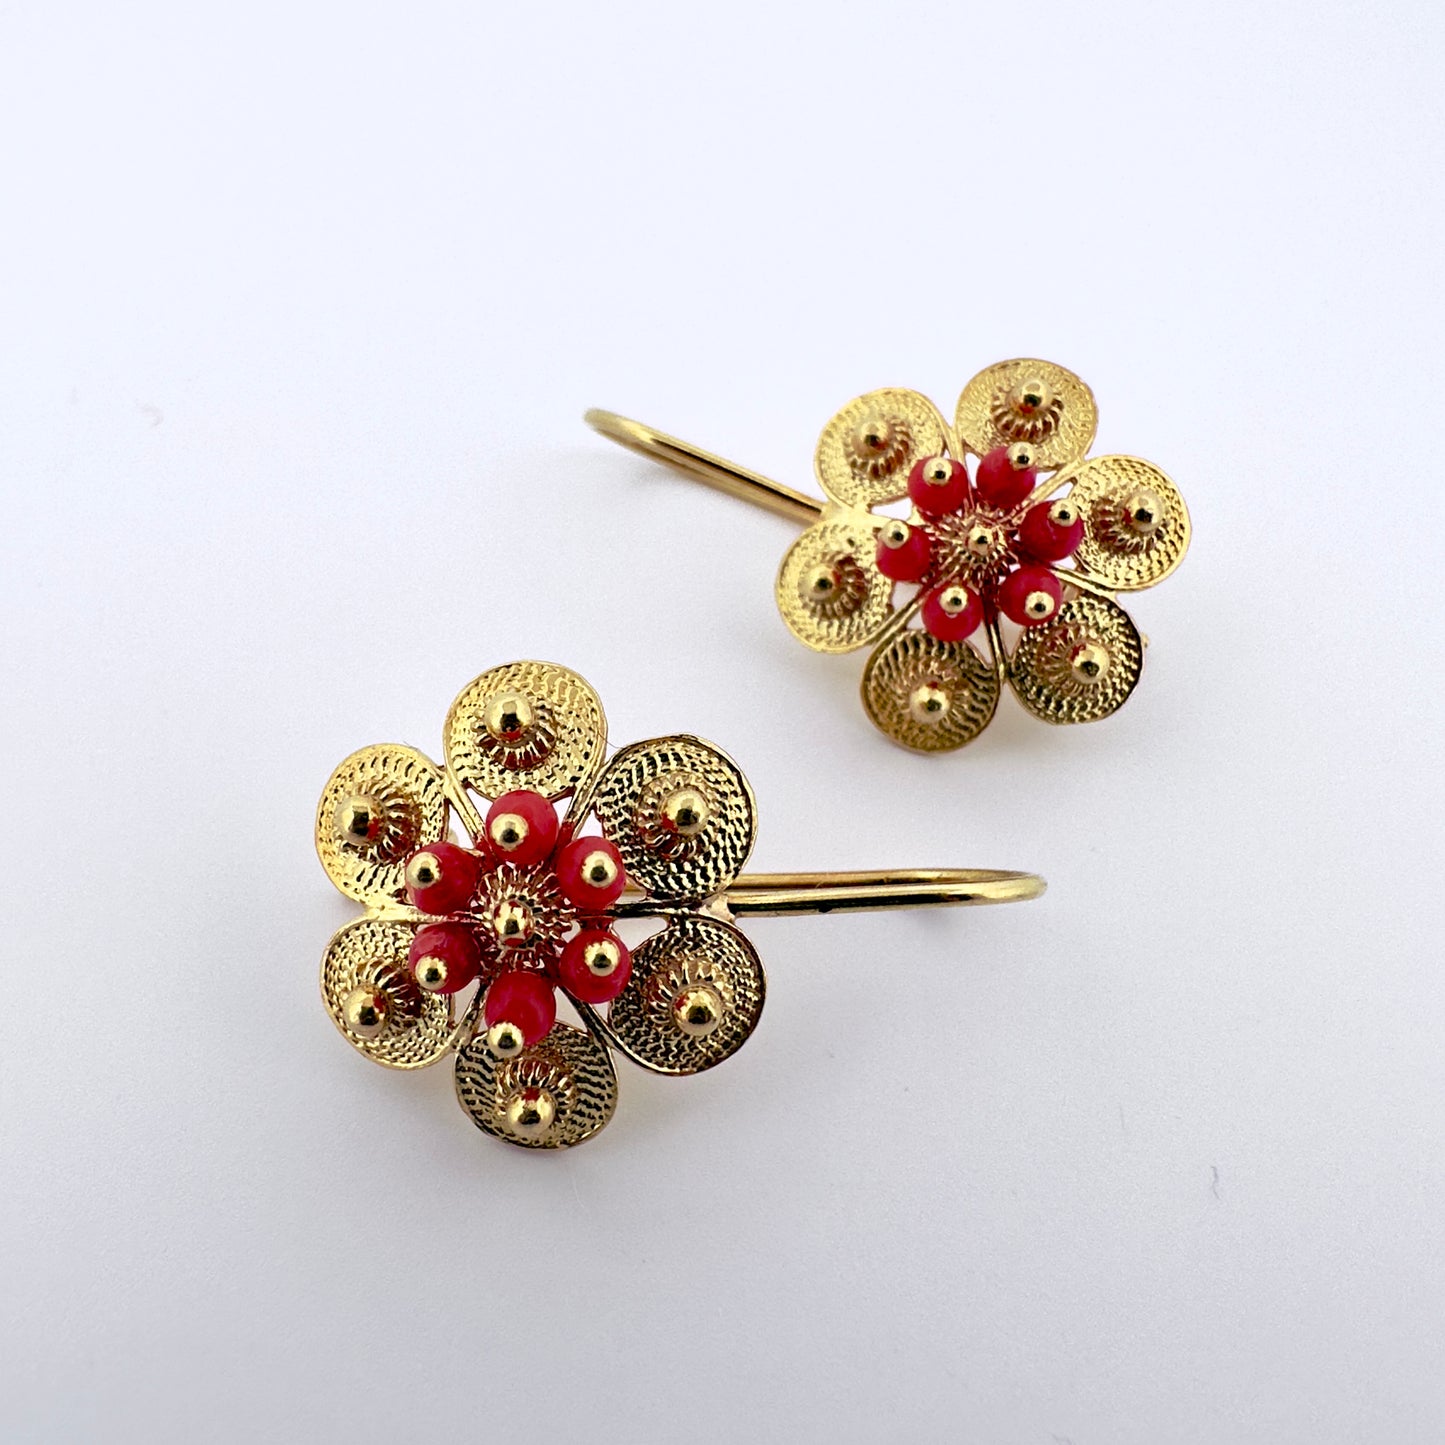 Coral Flower Earrings - Gold - Last pair!